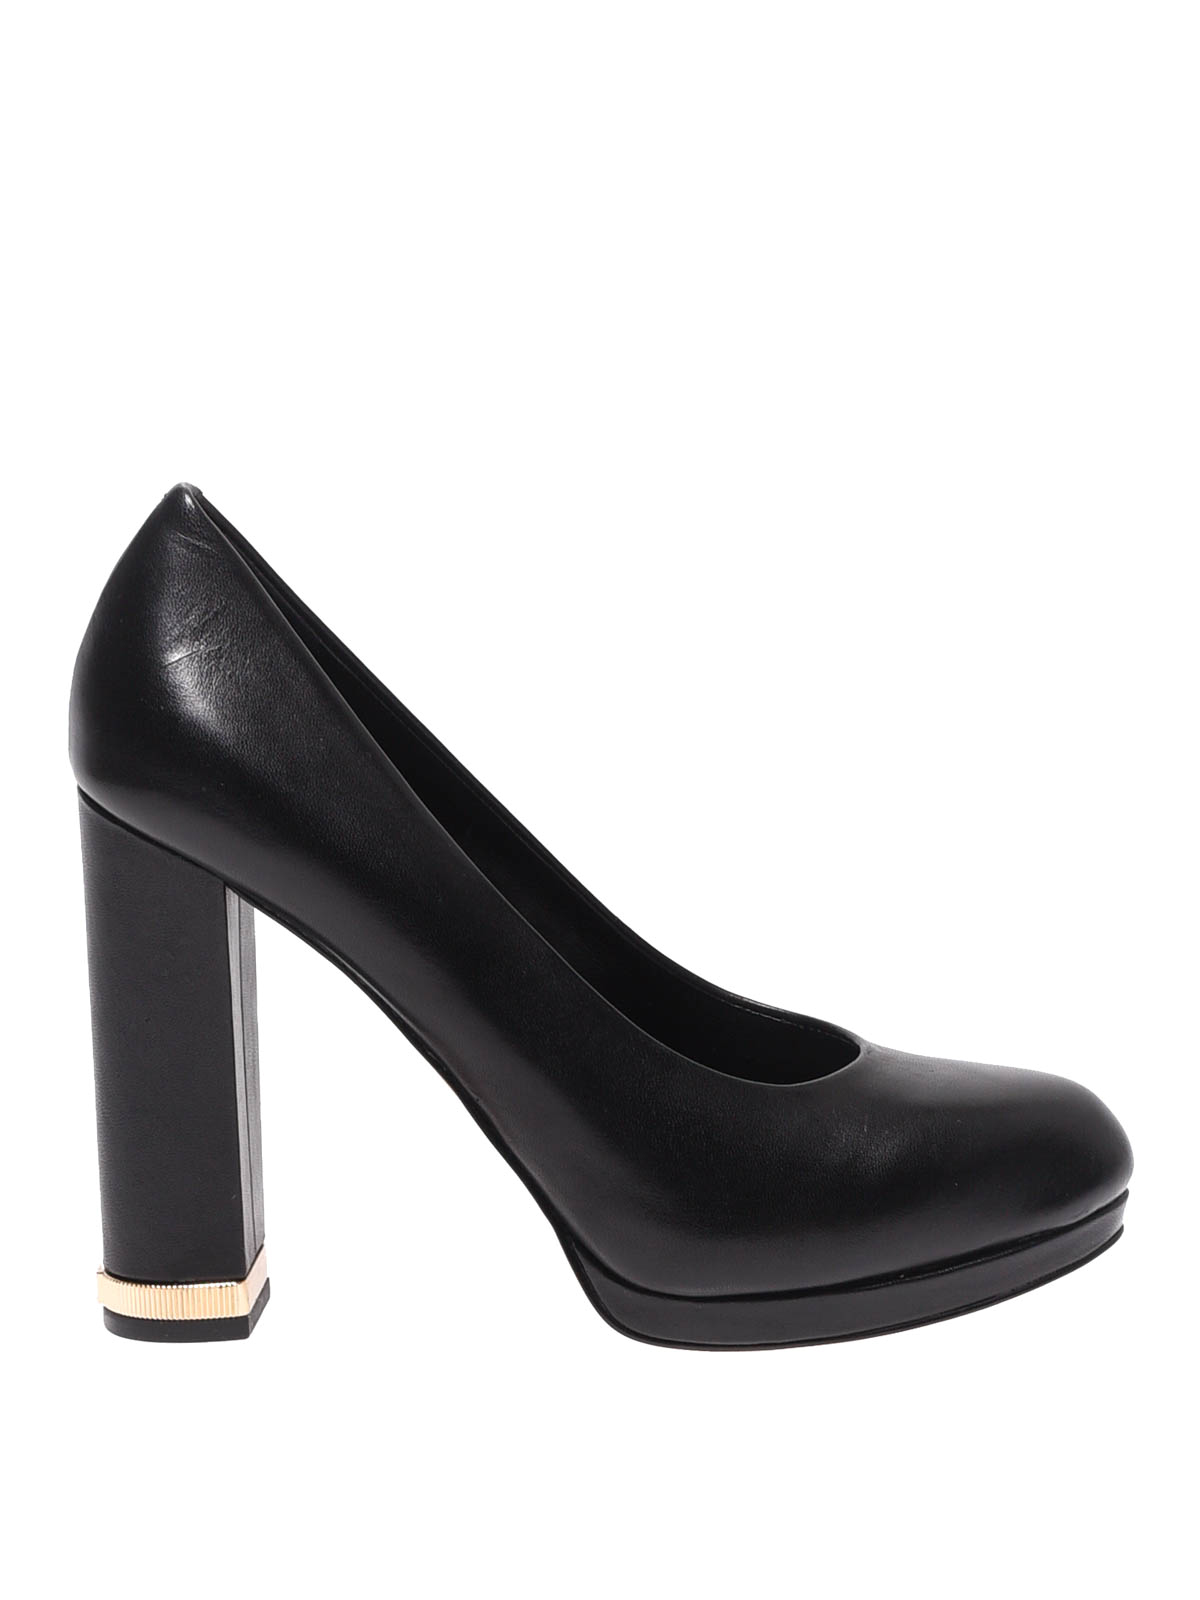 Court shoes Michael Kors - Valerie leather pumps - 40R9VAHP1L001